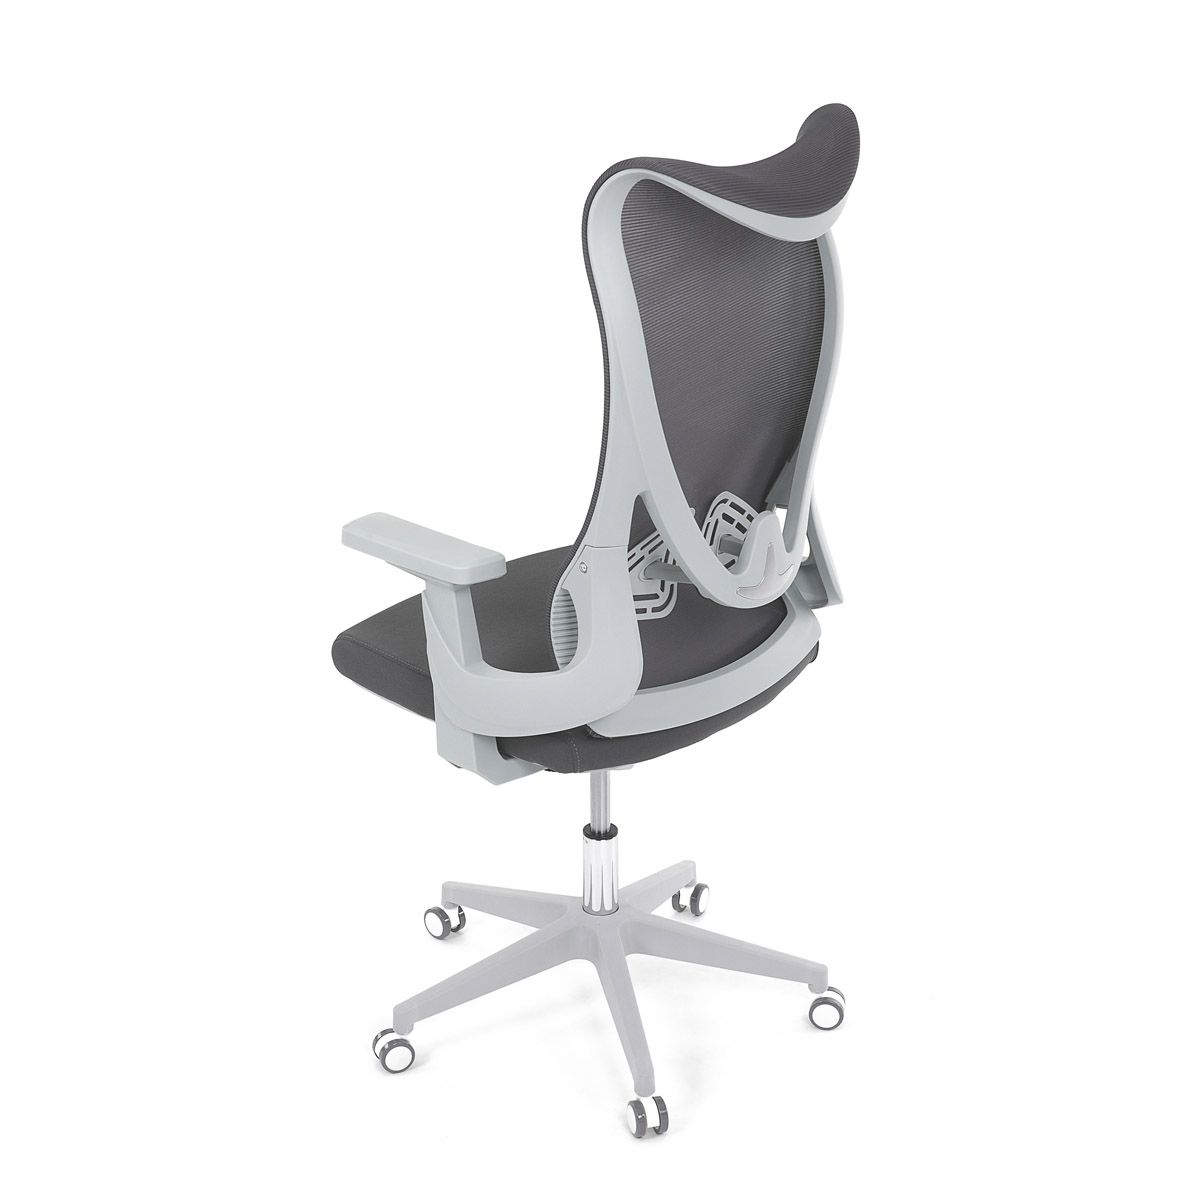 Židle kancelářská, šedý MESH, bílý plast, plastový kříž